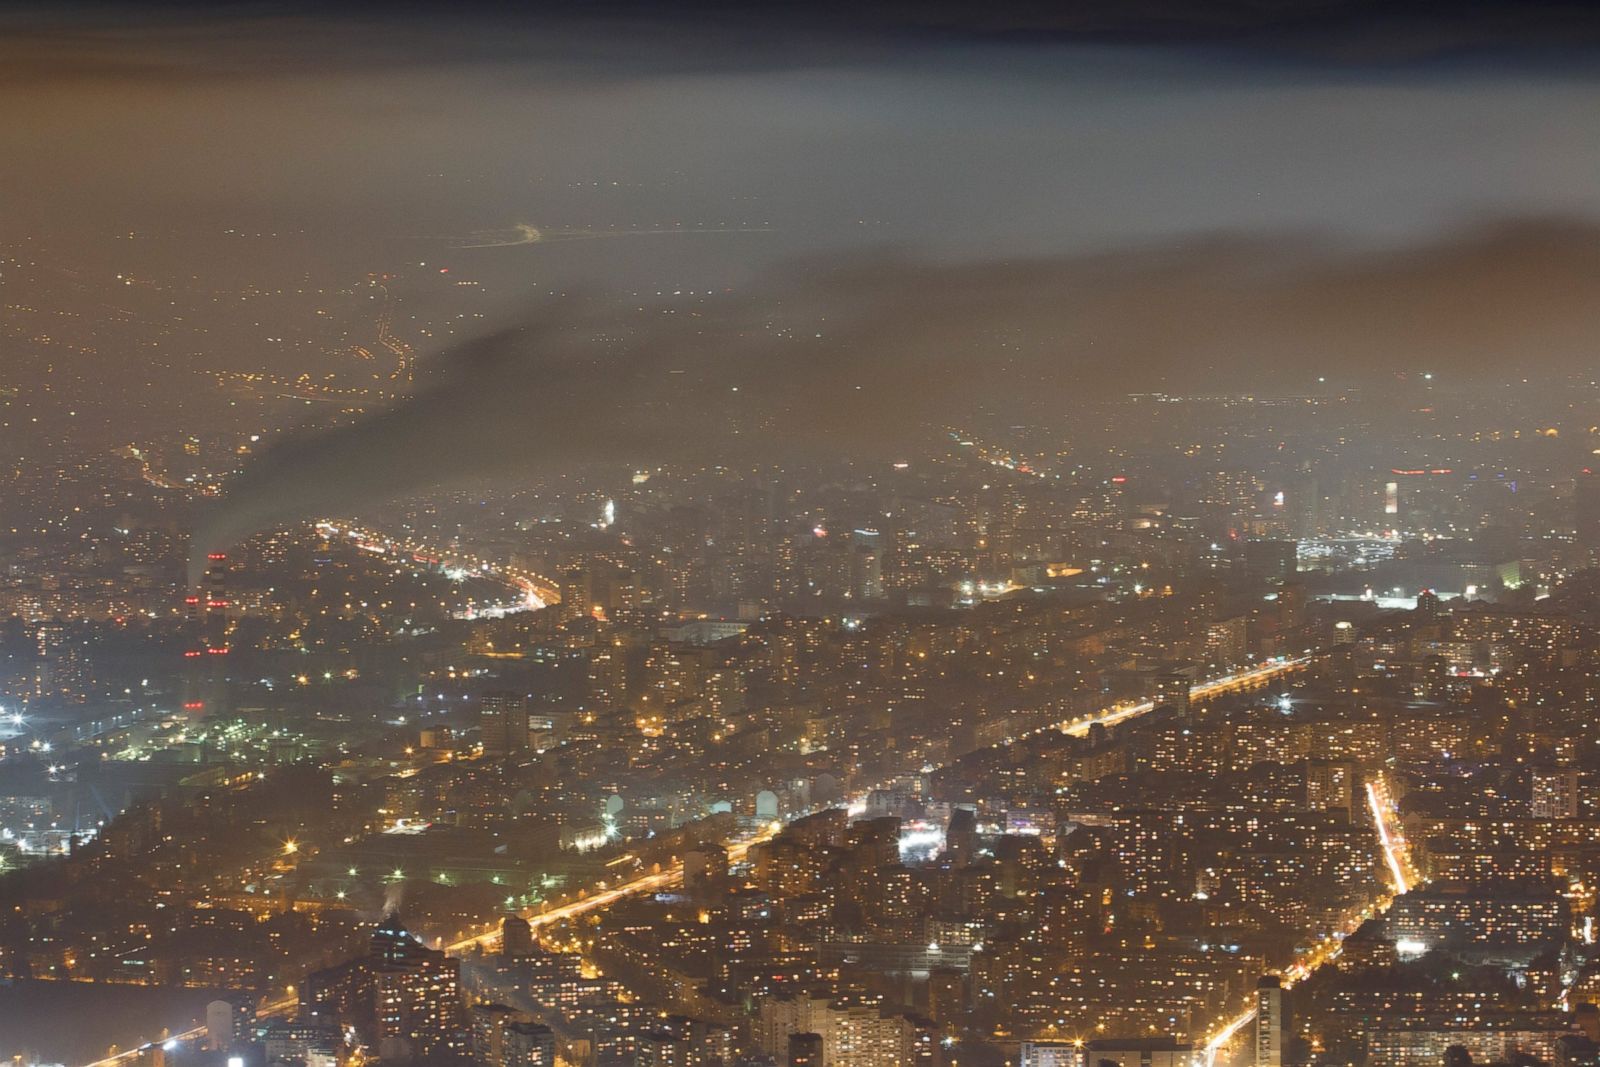 Cities Shrouded In Fog Photos Image 101 Abc News